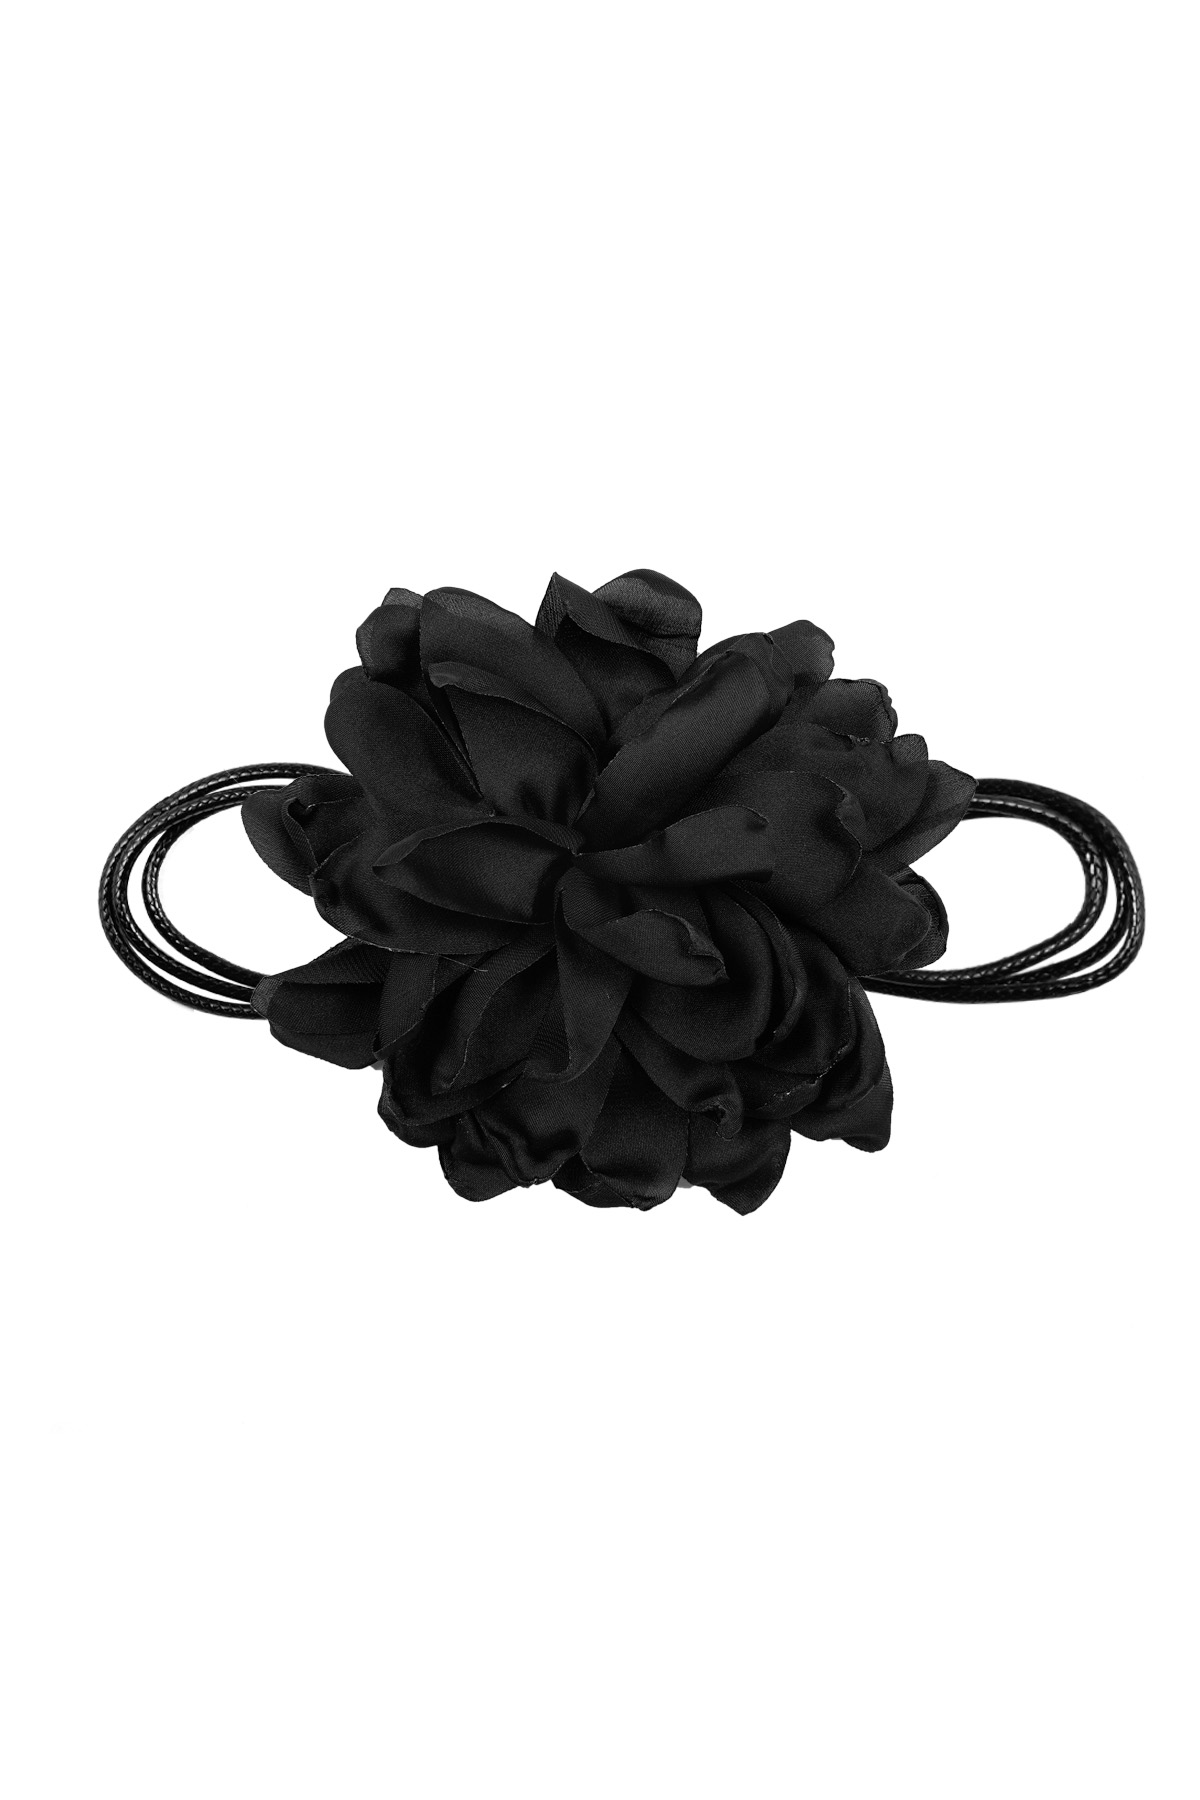 Collana fiore grande - nero h5 